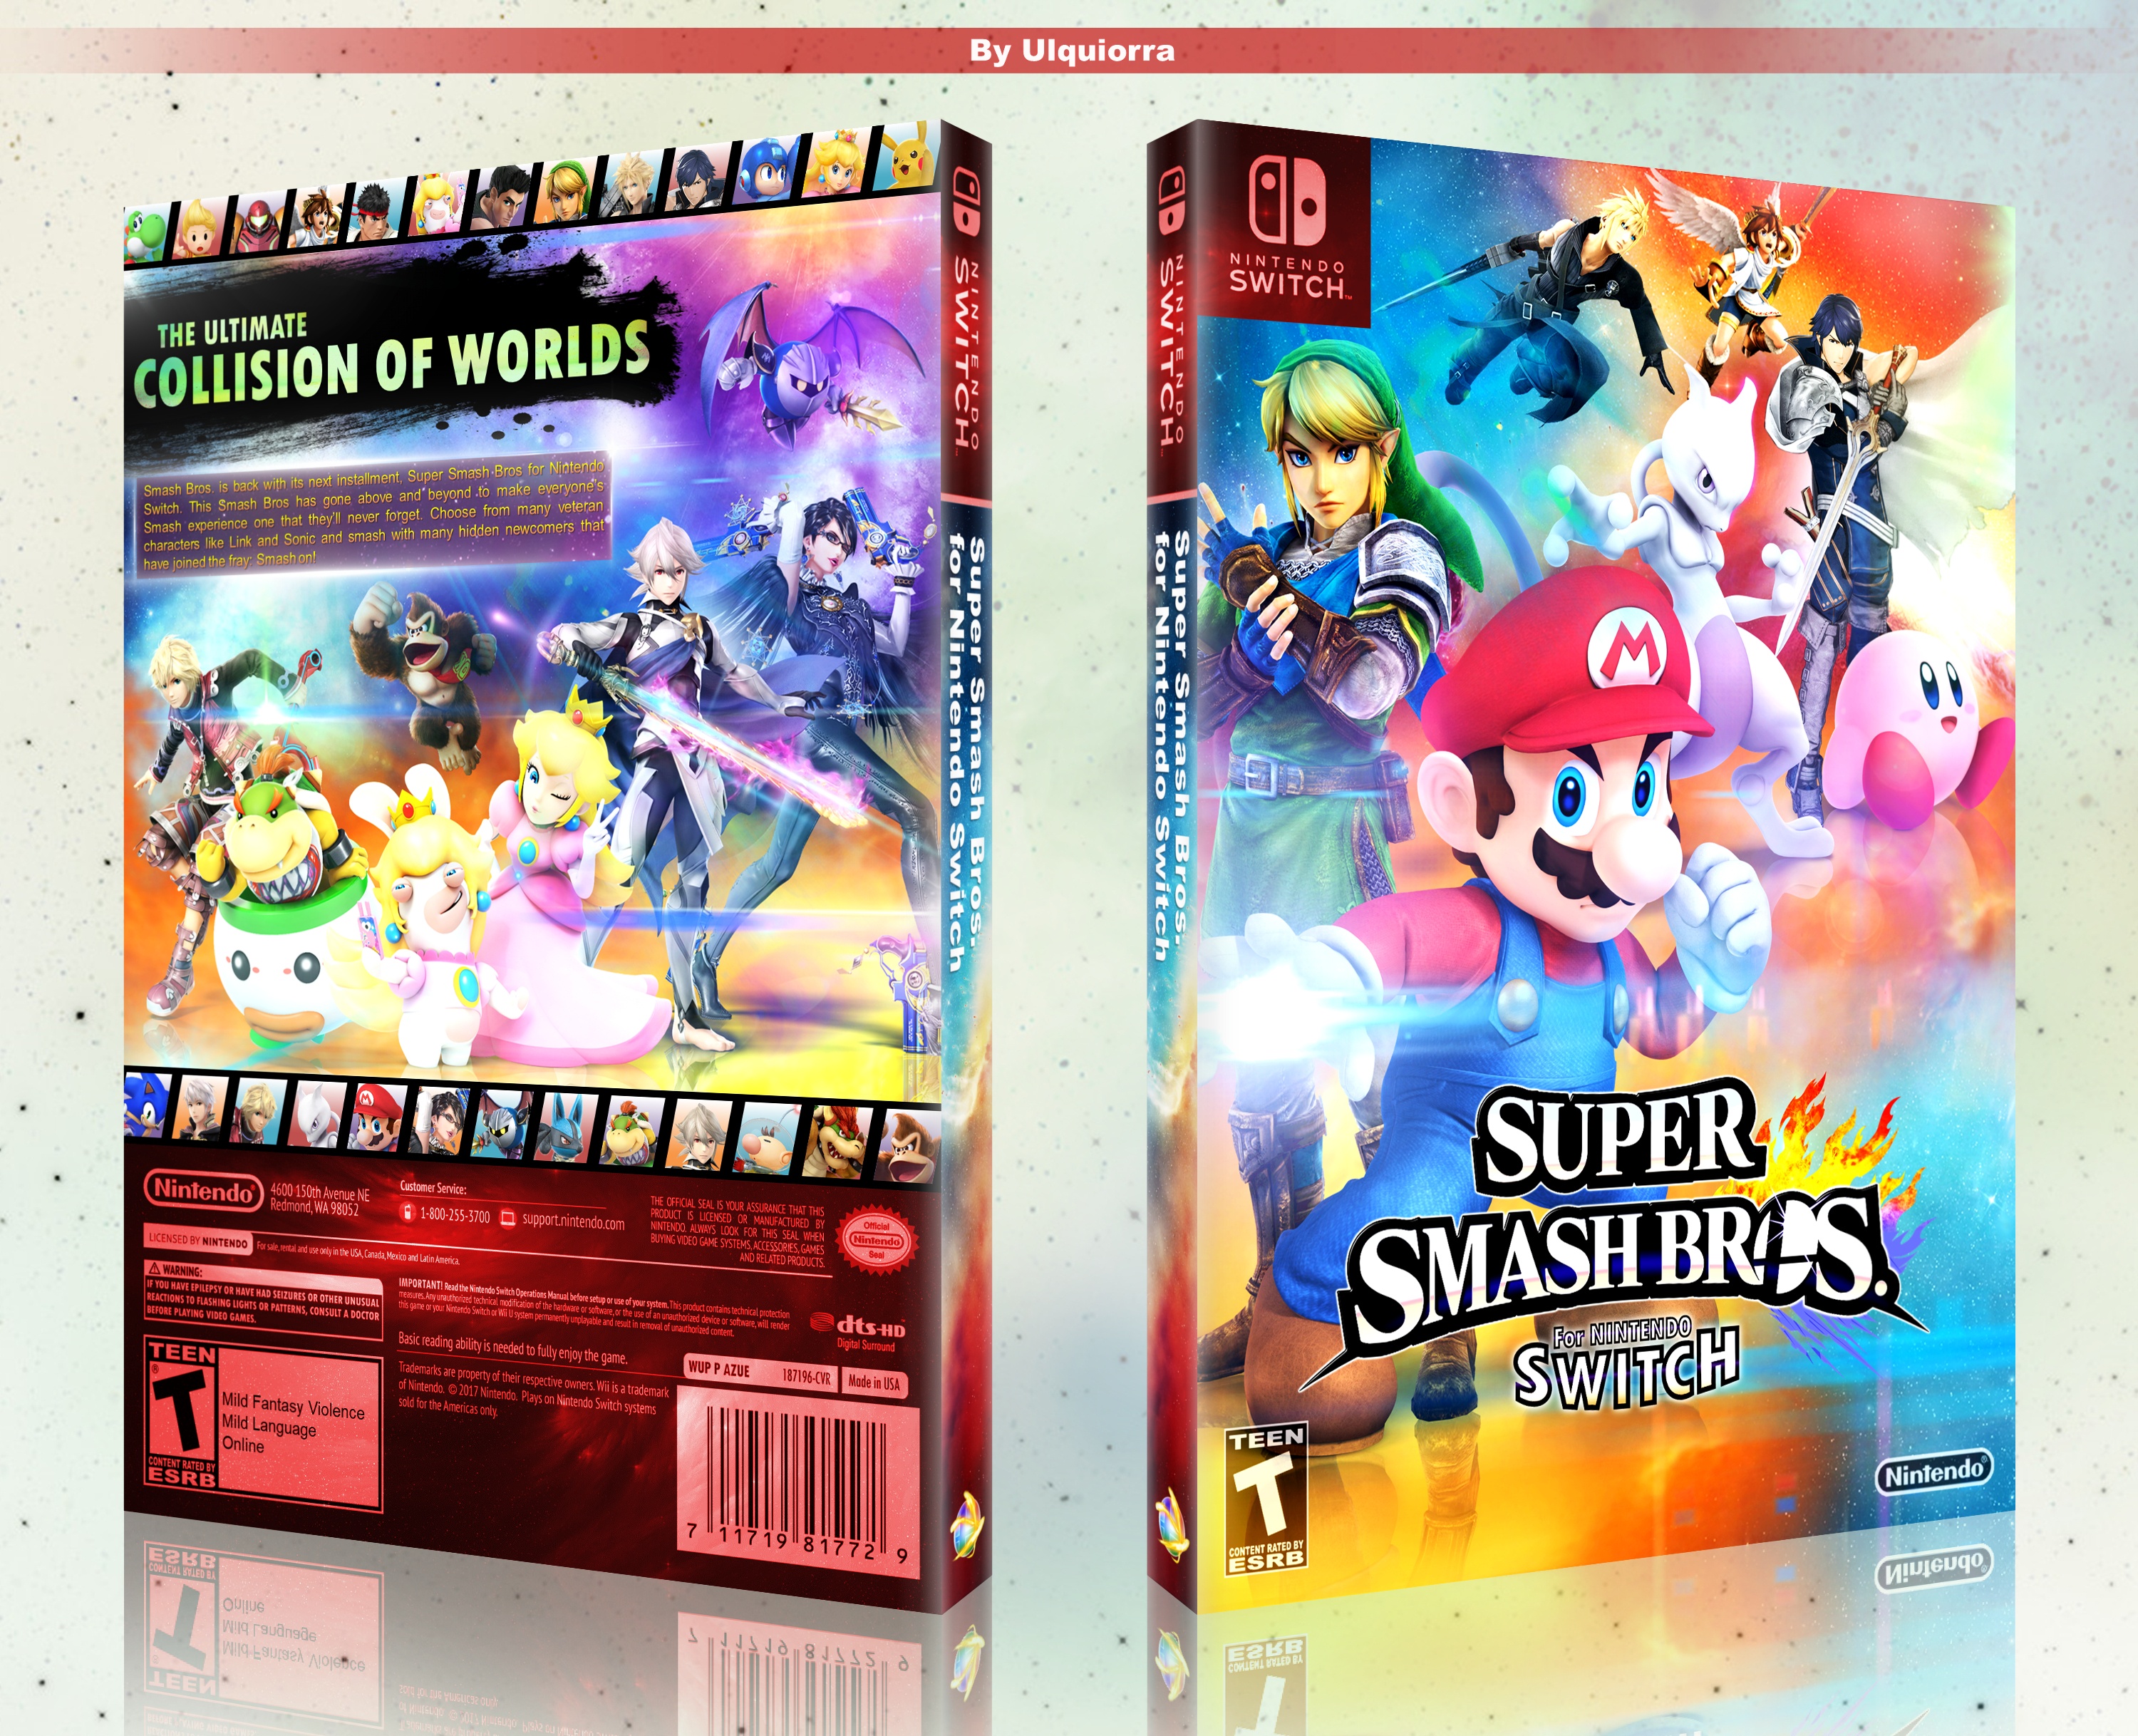 Super Smash Bros for Nintendo Switch box cover